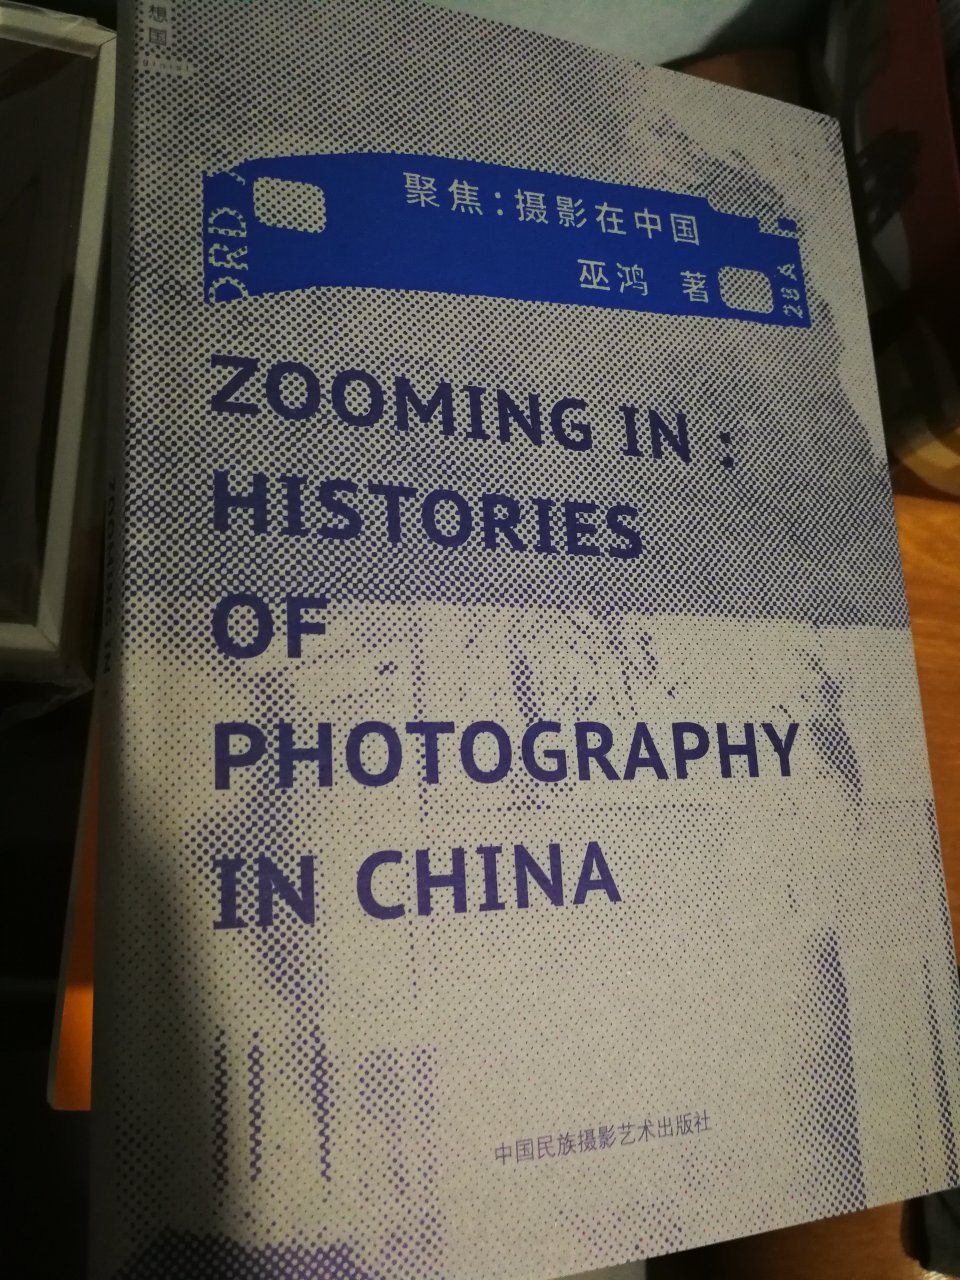 这是一本畅销的摄影类书籍。